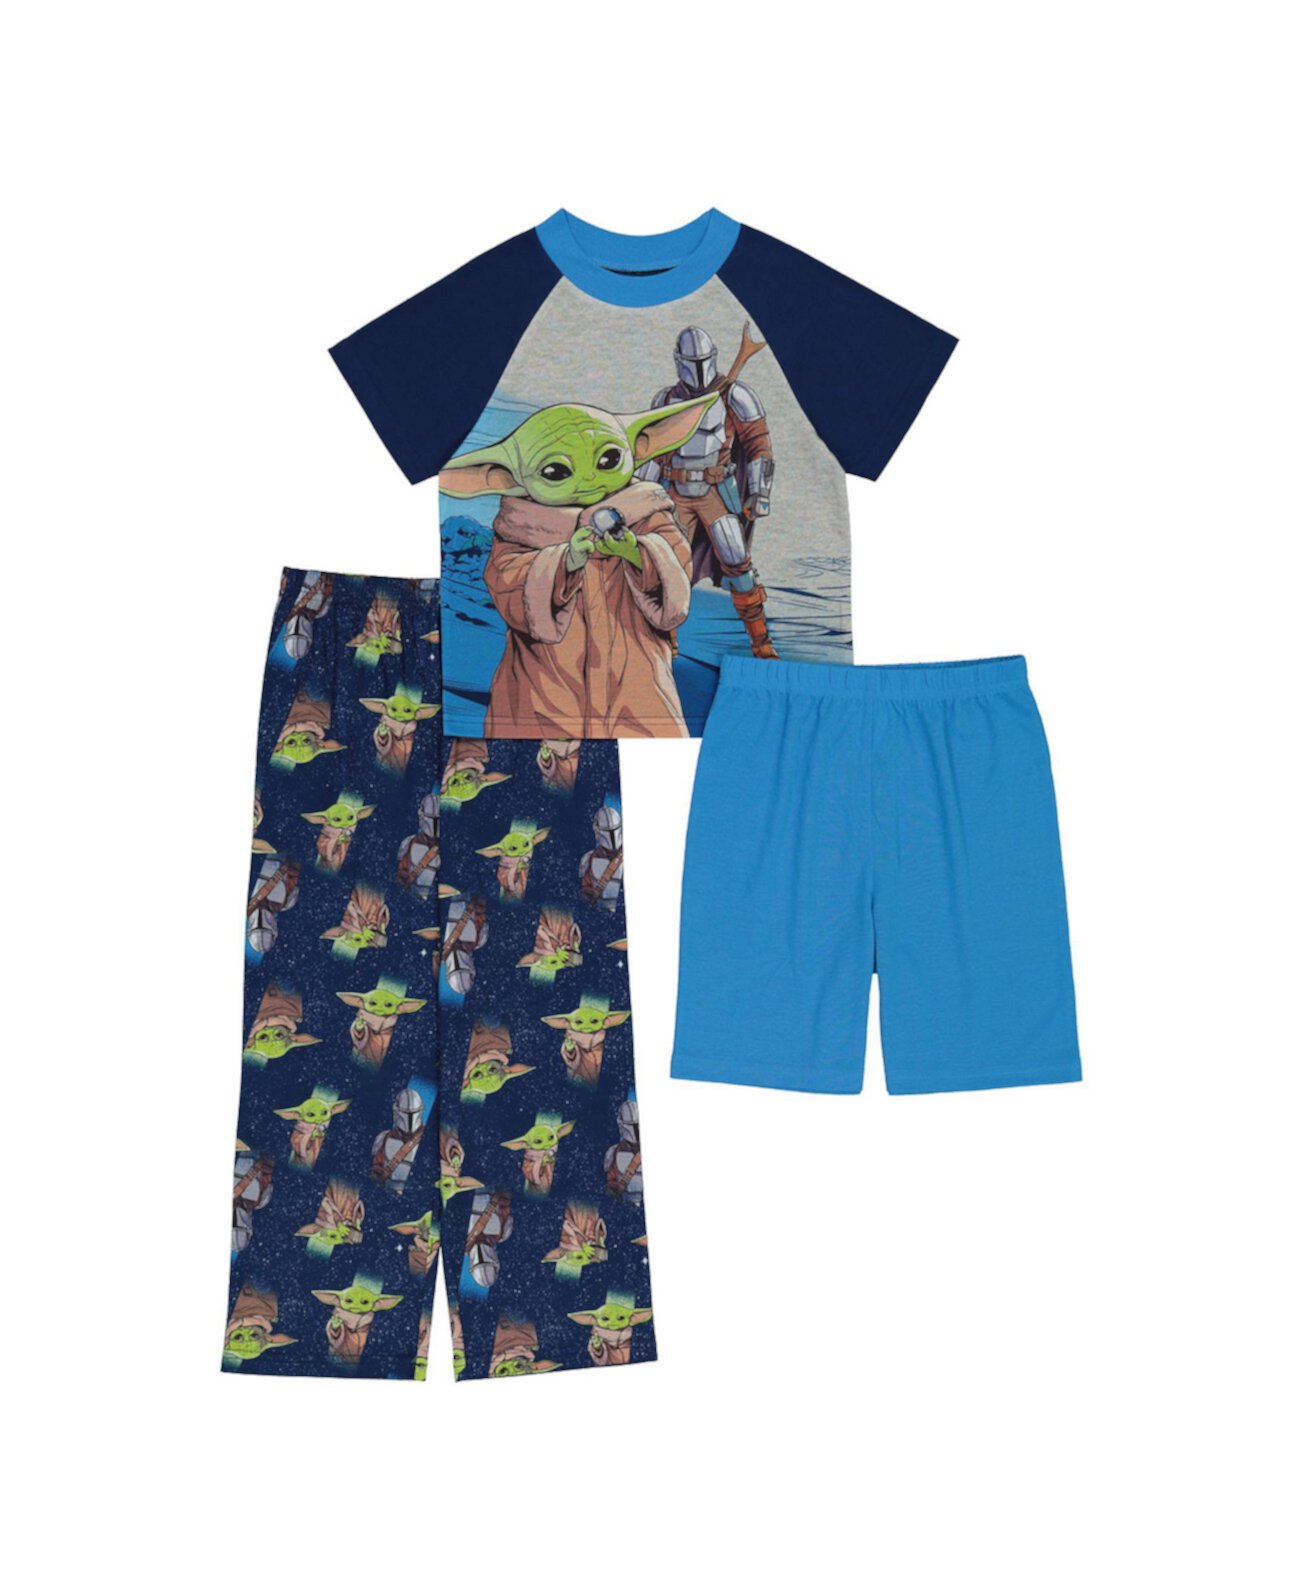 Футболка, шорты и пижама Big Boys Mandalorian, комплект из 3 предметов The Mandalorian